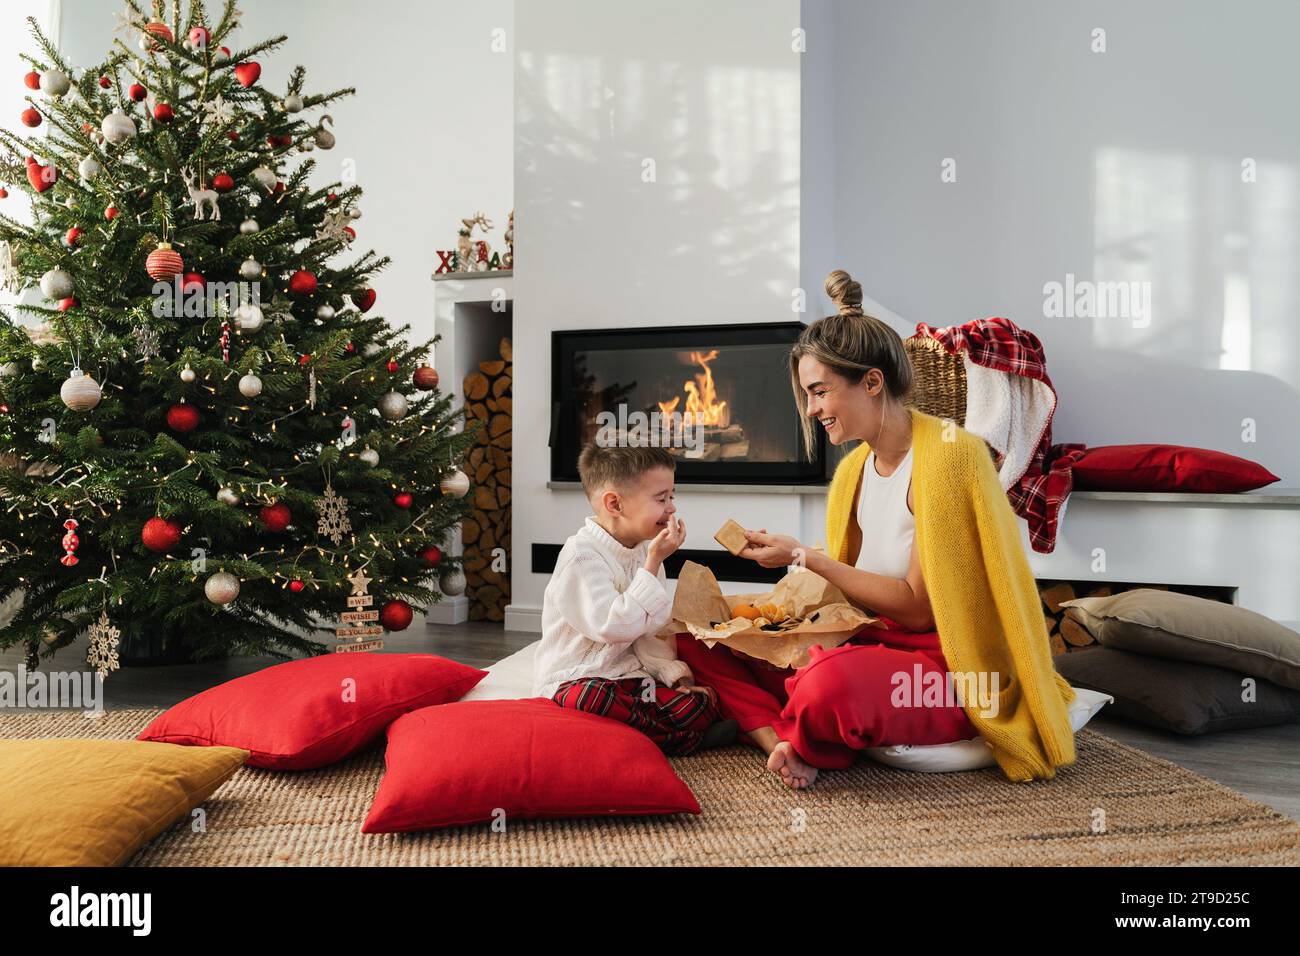 Die junge Frau und ihr kleiner Sohn sitzen neben einem glühenden Kamin in einem gemütlichen Wohnzimmer, geschmückt mit einem Weihnachtsbaum und festlichen Dekorationen, und genießen s Stockfoto